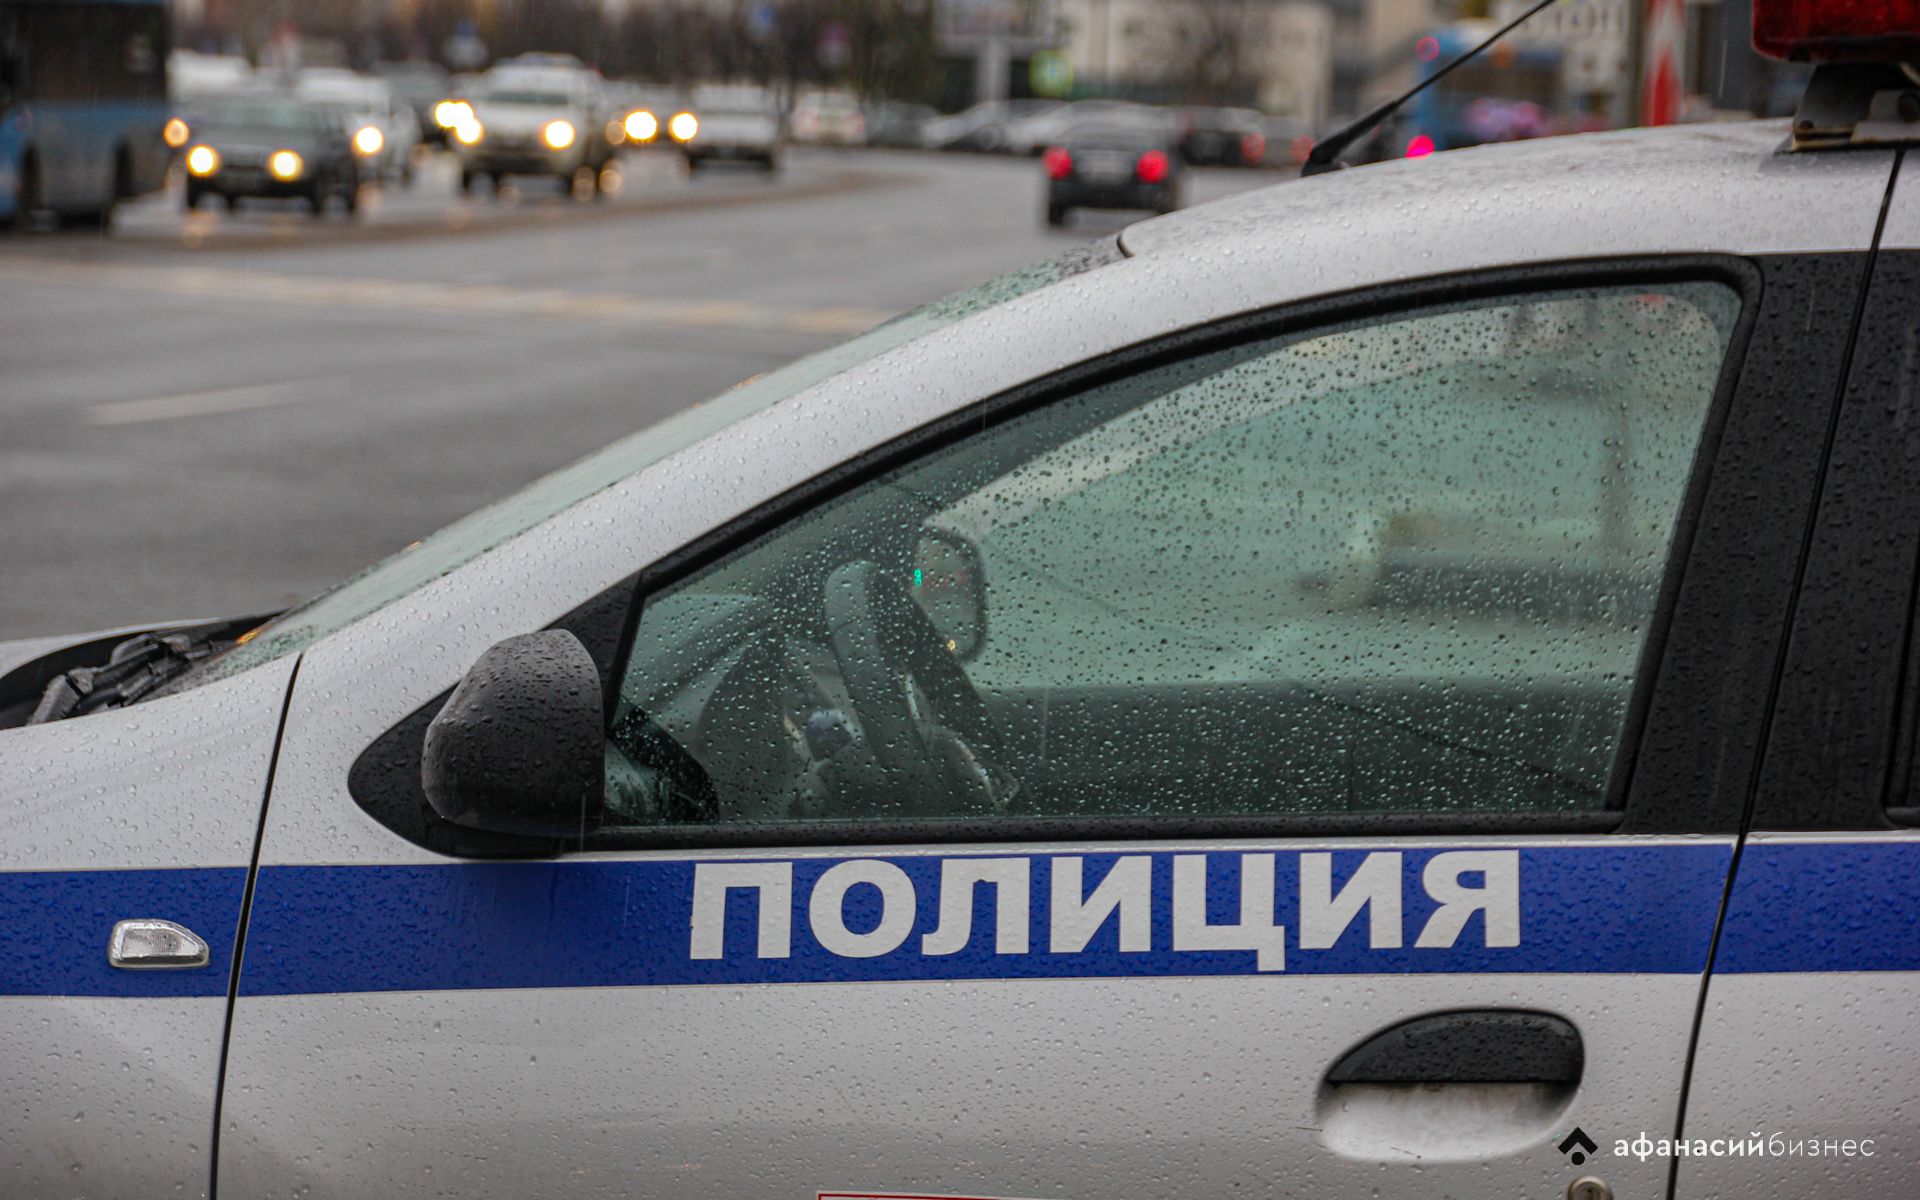 Трое жителей Тверской области устроили стрельбу из автомата в Петербурге